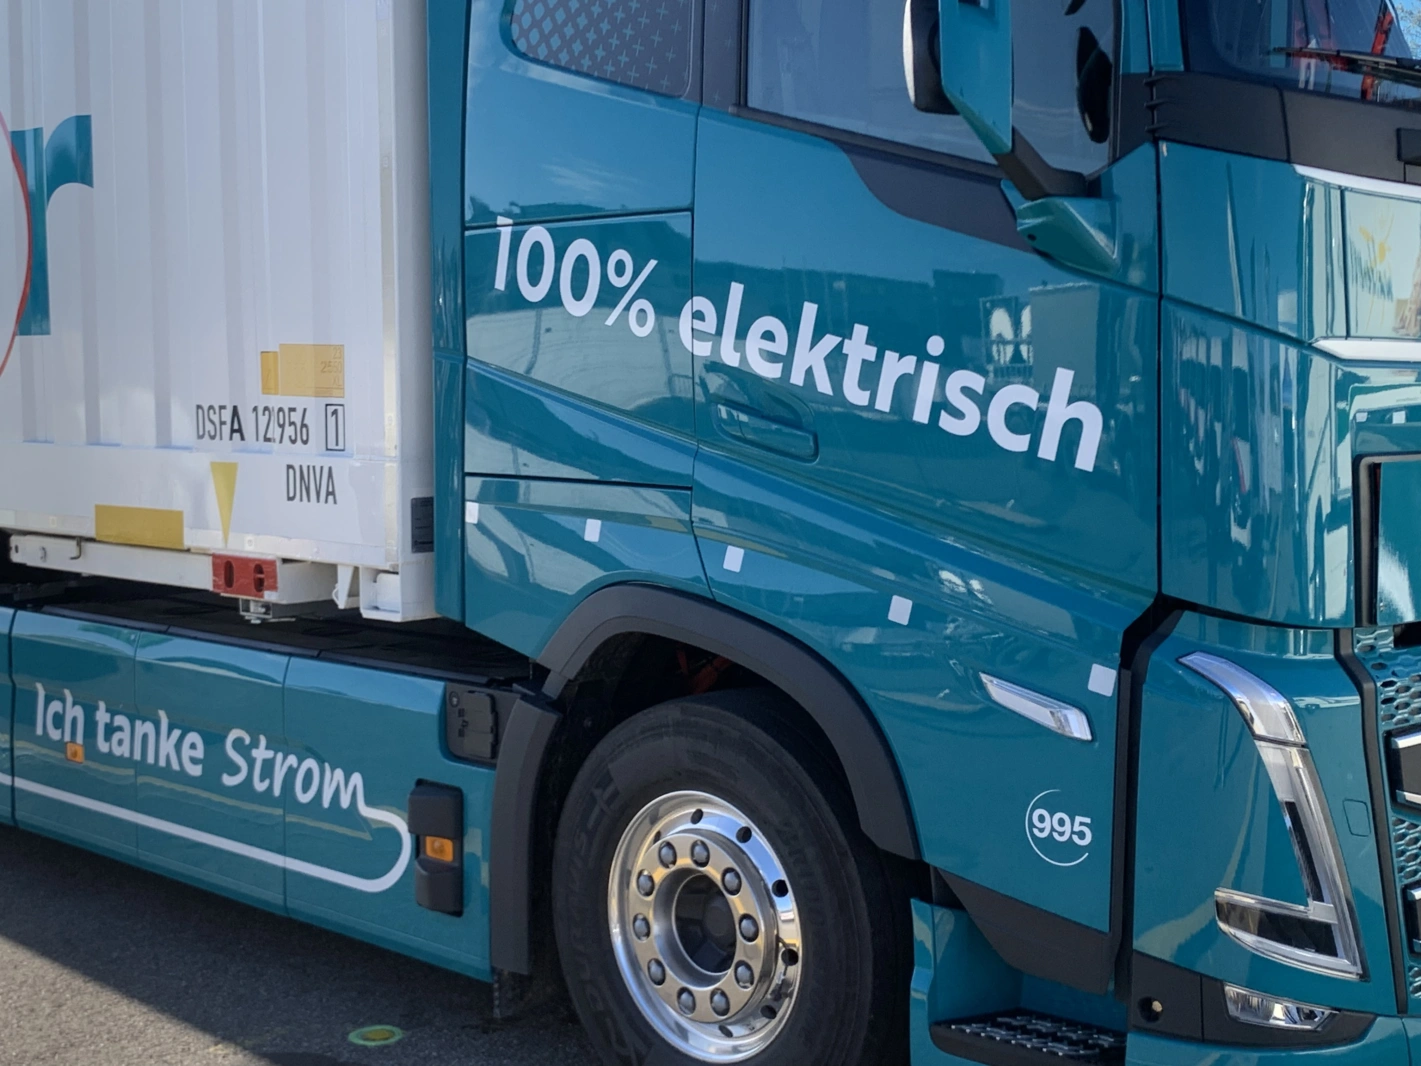 Das Aargauer Transportunternehmen Dreier 25 Millionen Franken investiert in 50 Elektro-LKWs. Foto: msk